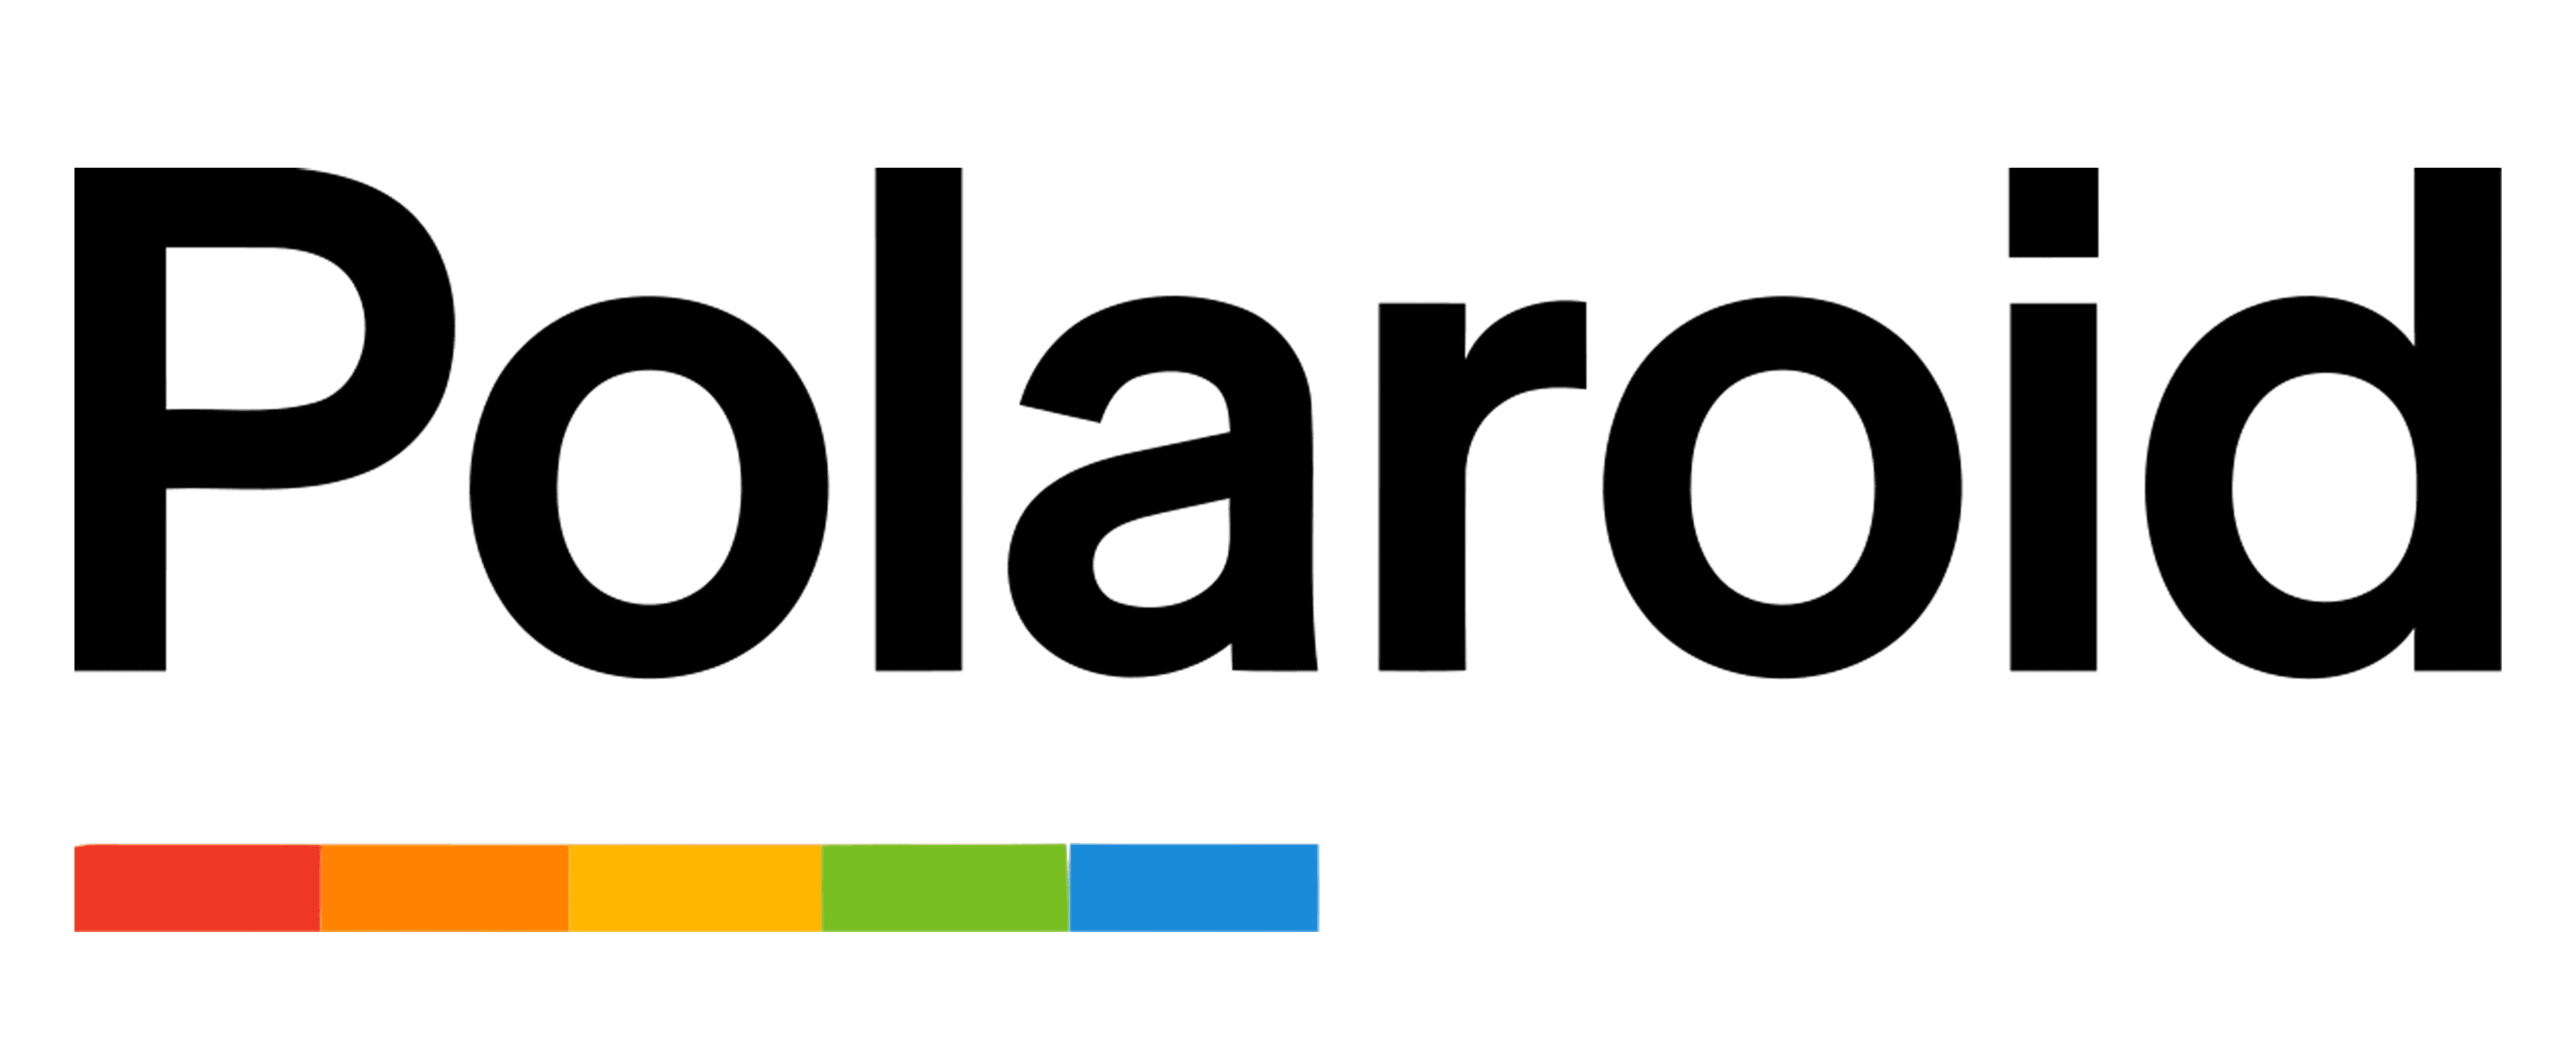 Polaroid-logo